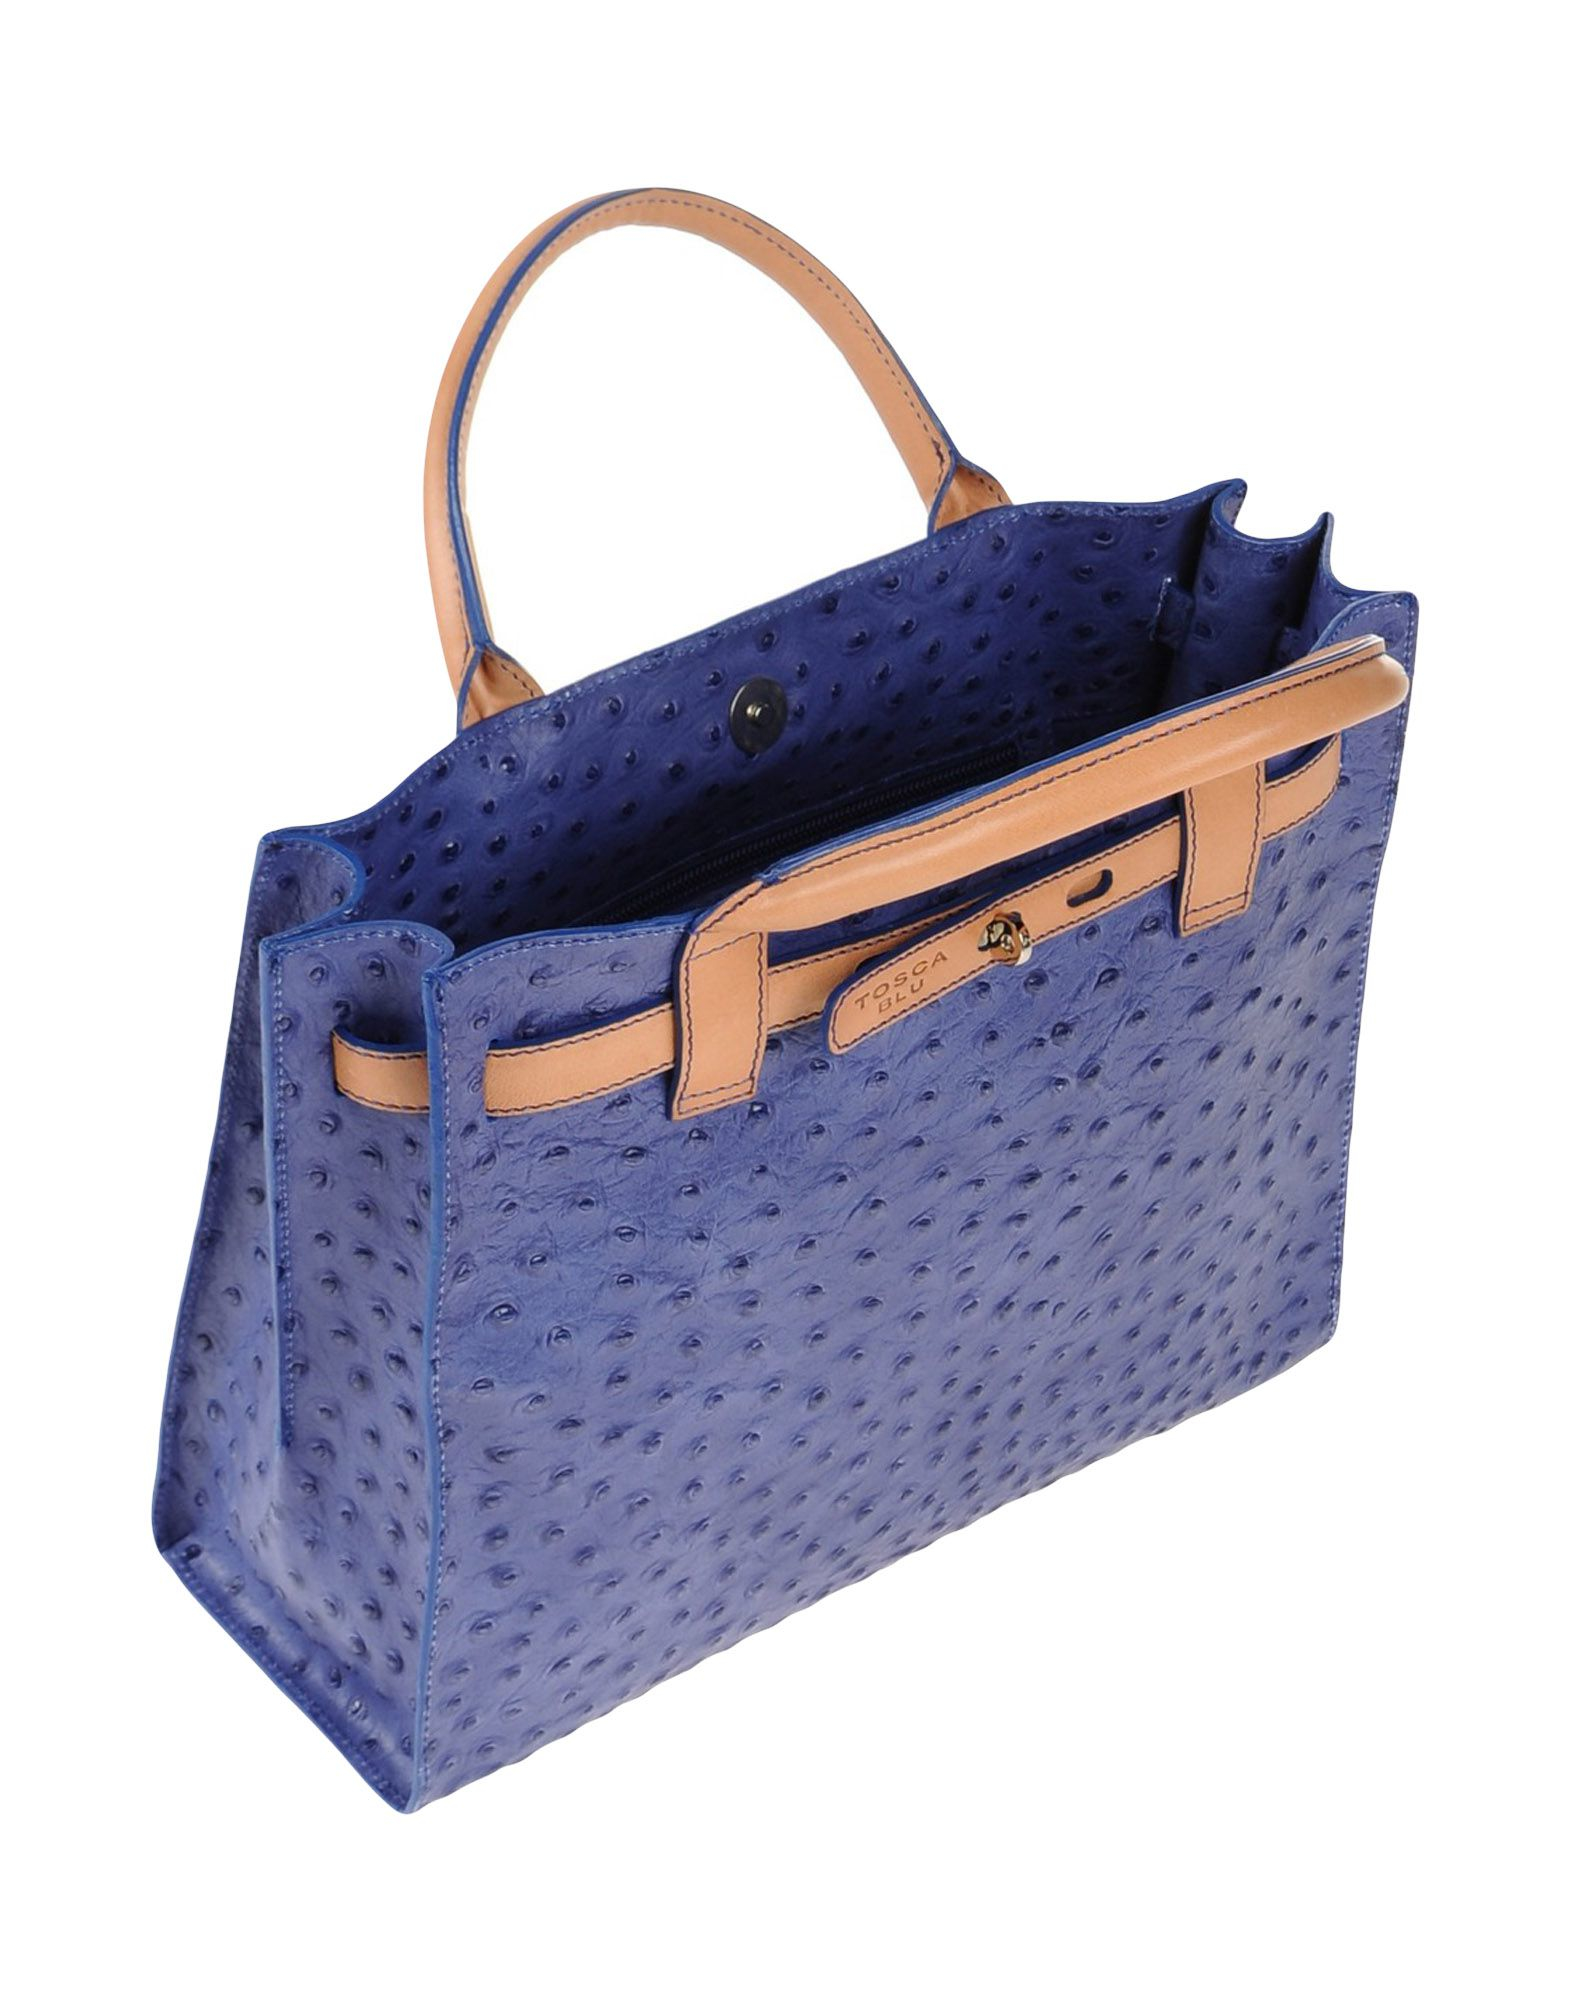 Tosca Blu Leather Handbag in Dark Blue (Blue) - Lyst